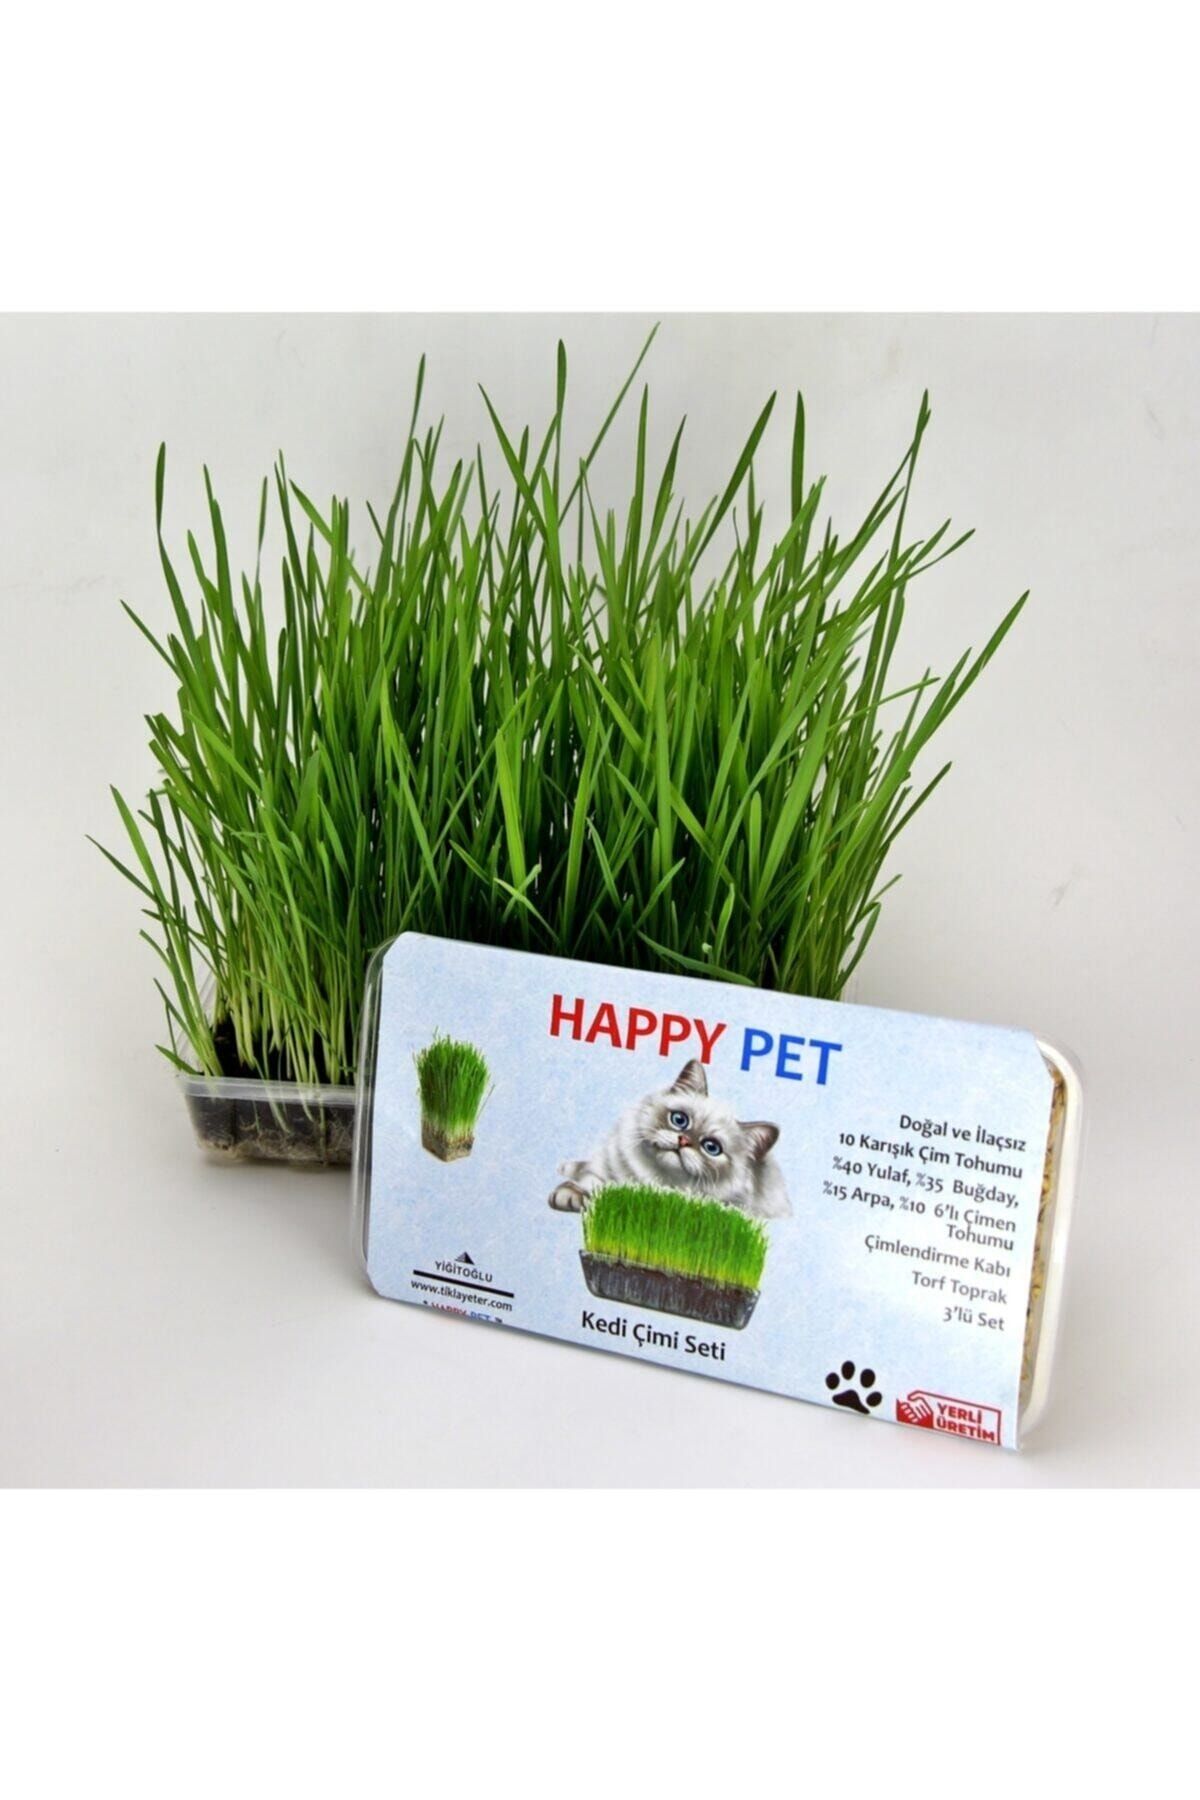 Happy Pet Kedi Çimi Seti 2'li Paket Avantaj 100gr. 6'lı Karışım Çim Buğday Yulaf Arpa Çim Tüy Yumağı Engeller